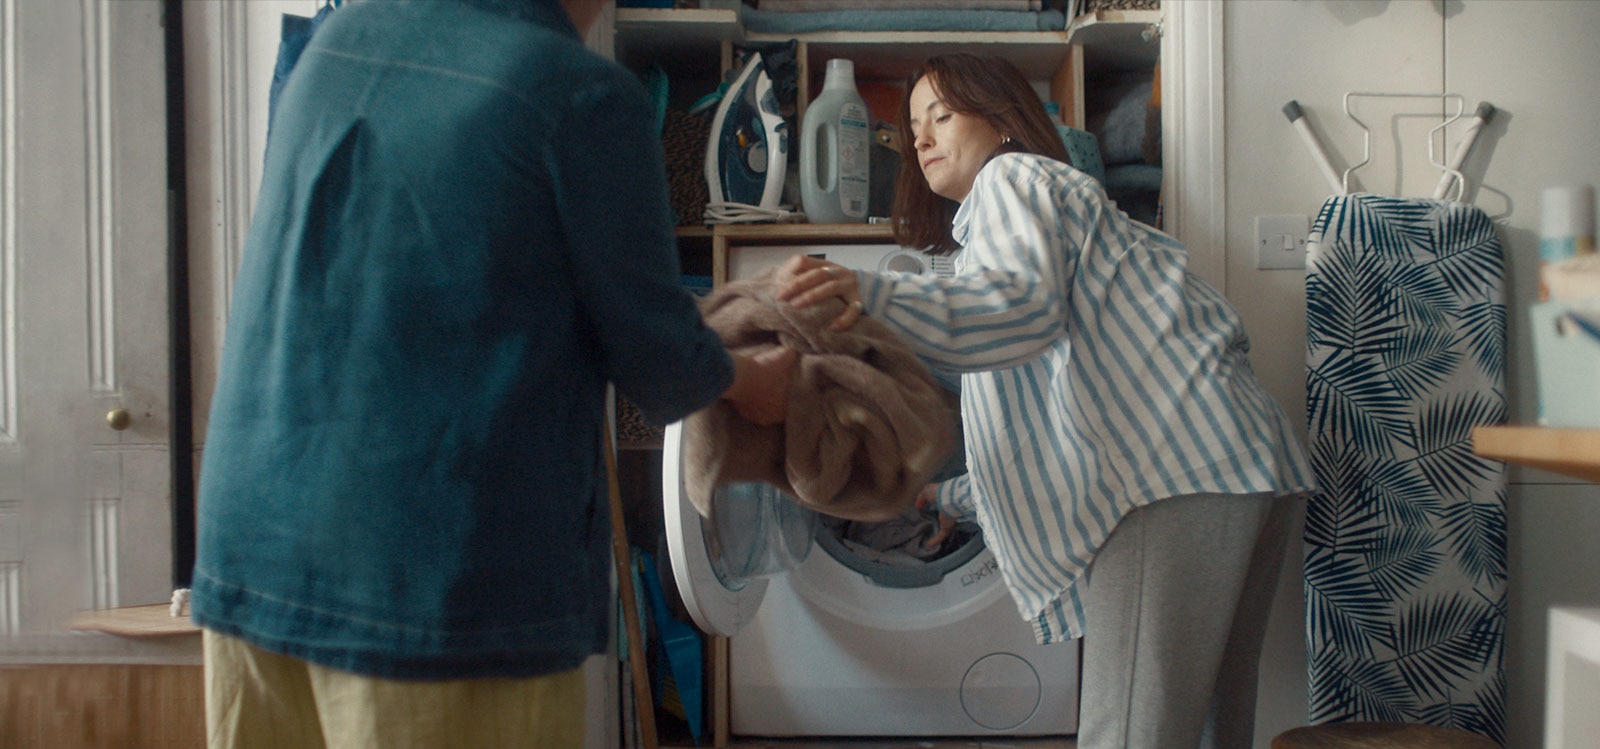 Kobieta wyjmuje pranie z pralki i podaje je mamie.